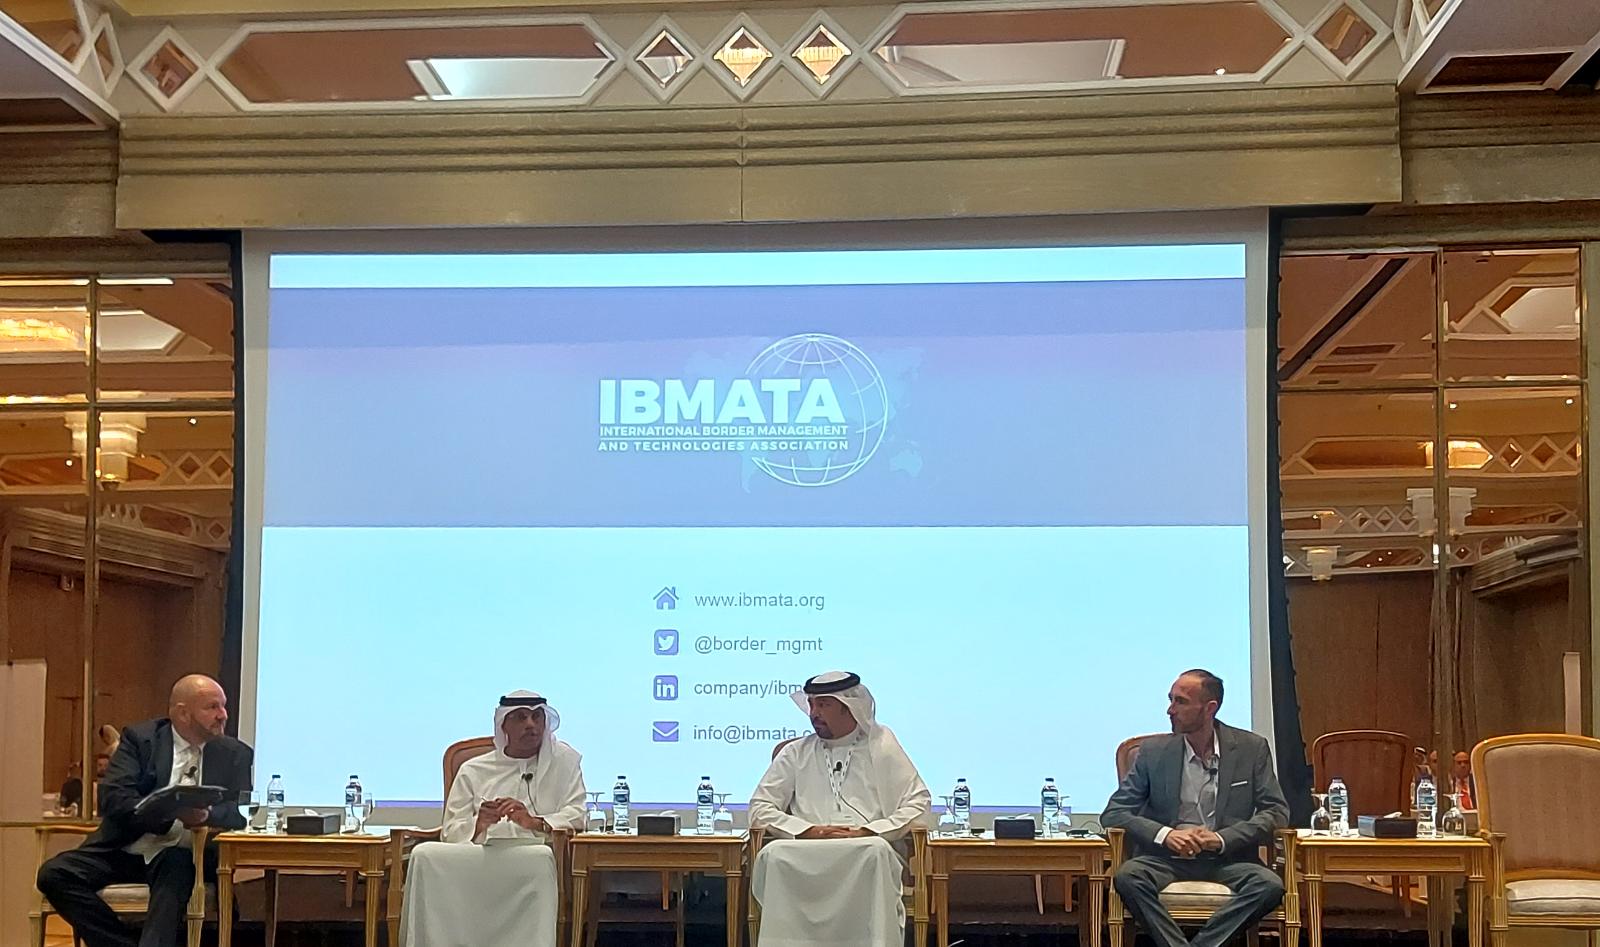 معالي رئيس الجمارك يشارك في مؤتمر إدارة الحدود وتكنولوجيا الشرق الأوسط في دبي